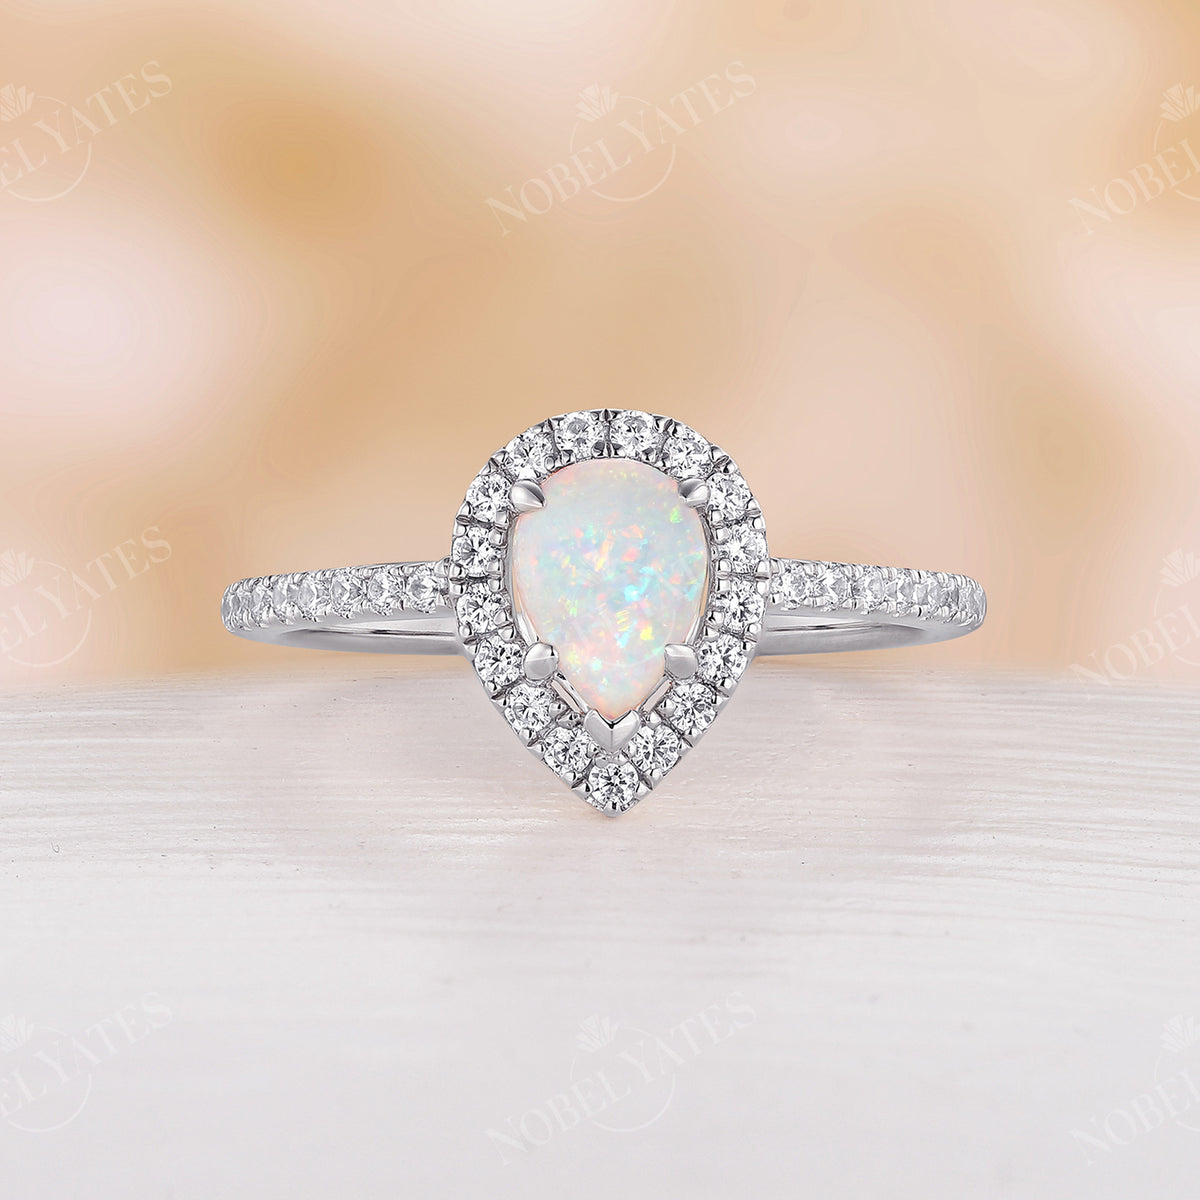 Vintage White Opal & Moissanite Engagement Ring Set Rose Gold